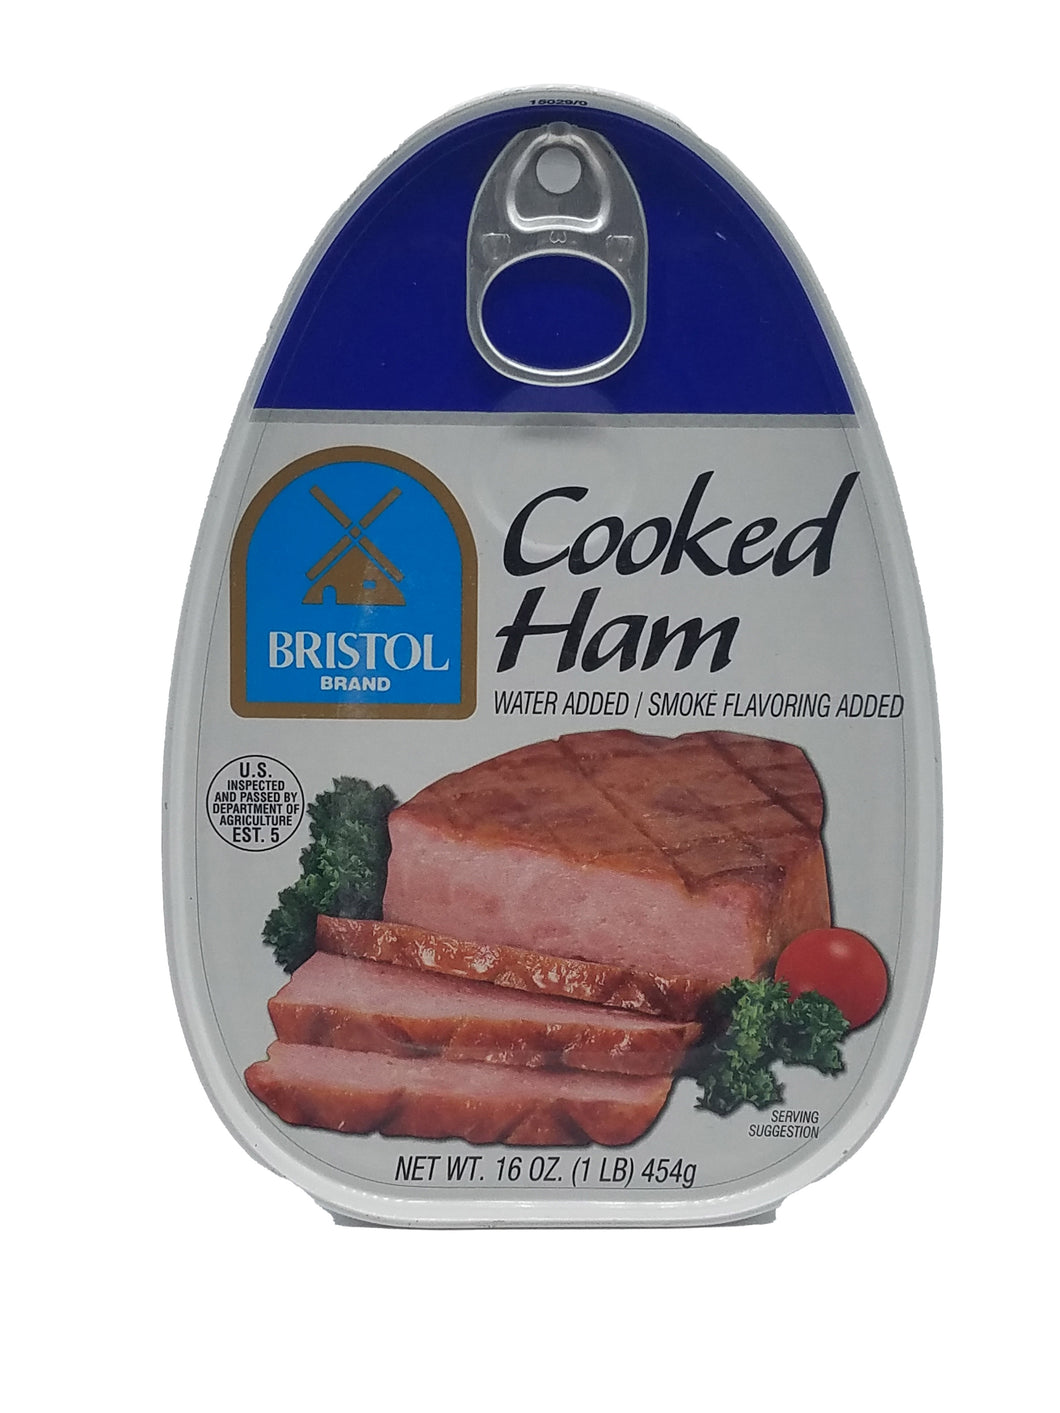 Bristol Cooked Ham